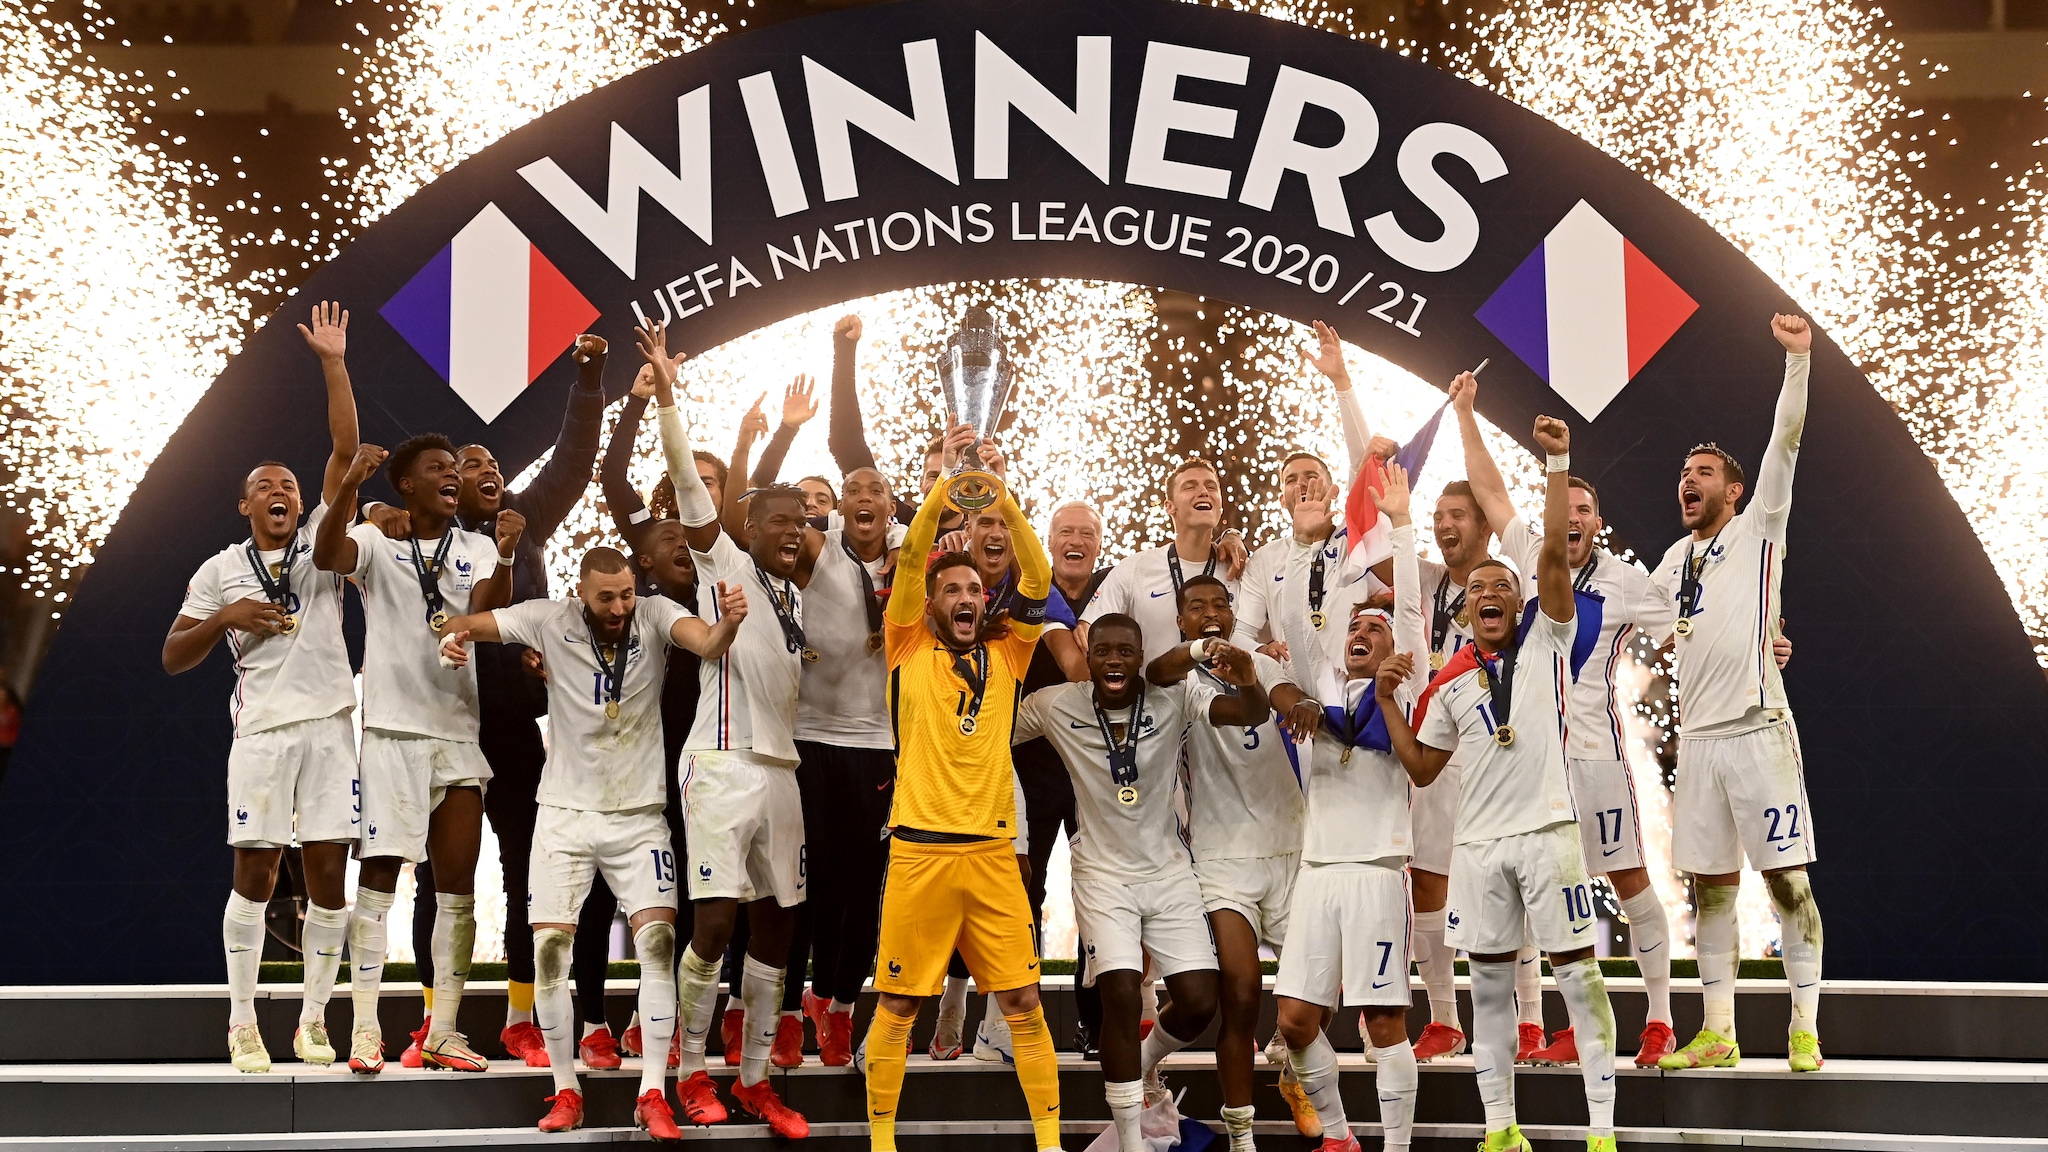 Ganadores de la uefa nations league